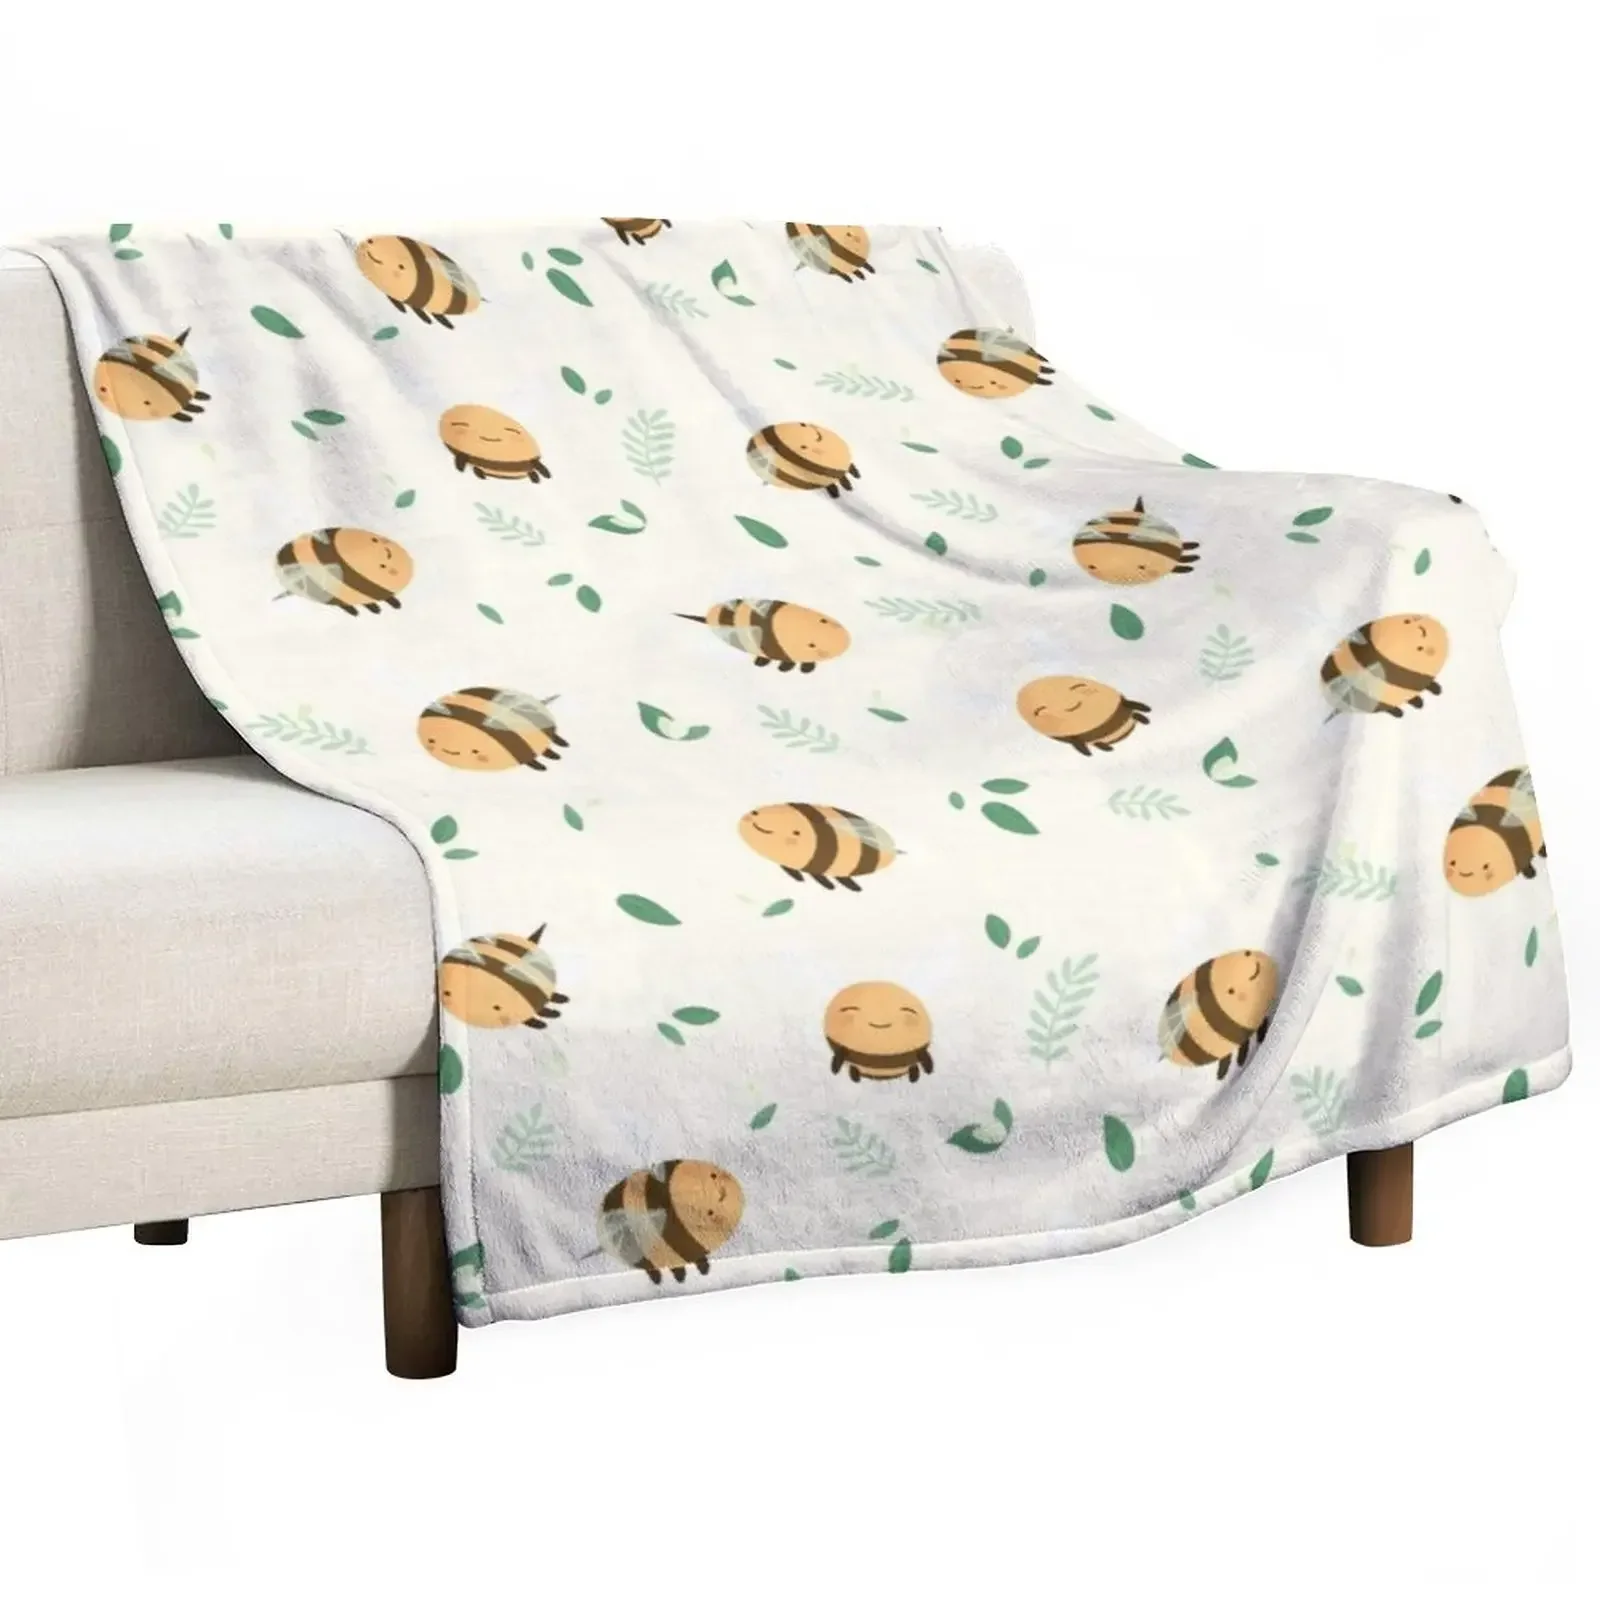 

Множество пчелиных пледов, персонализированные подарочные покрывала для кровати, одеяла Furrys